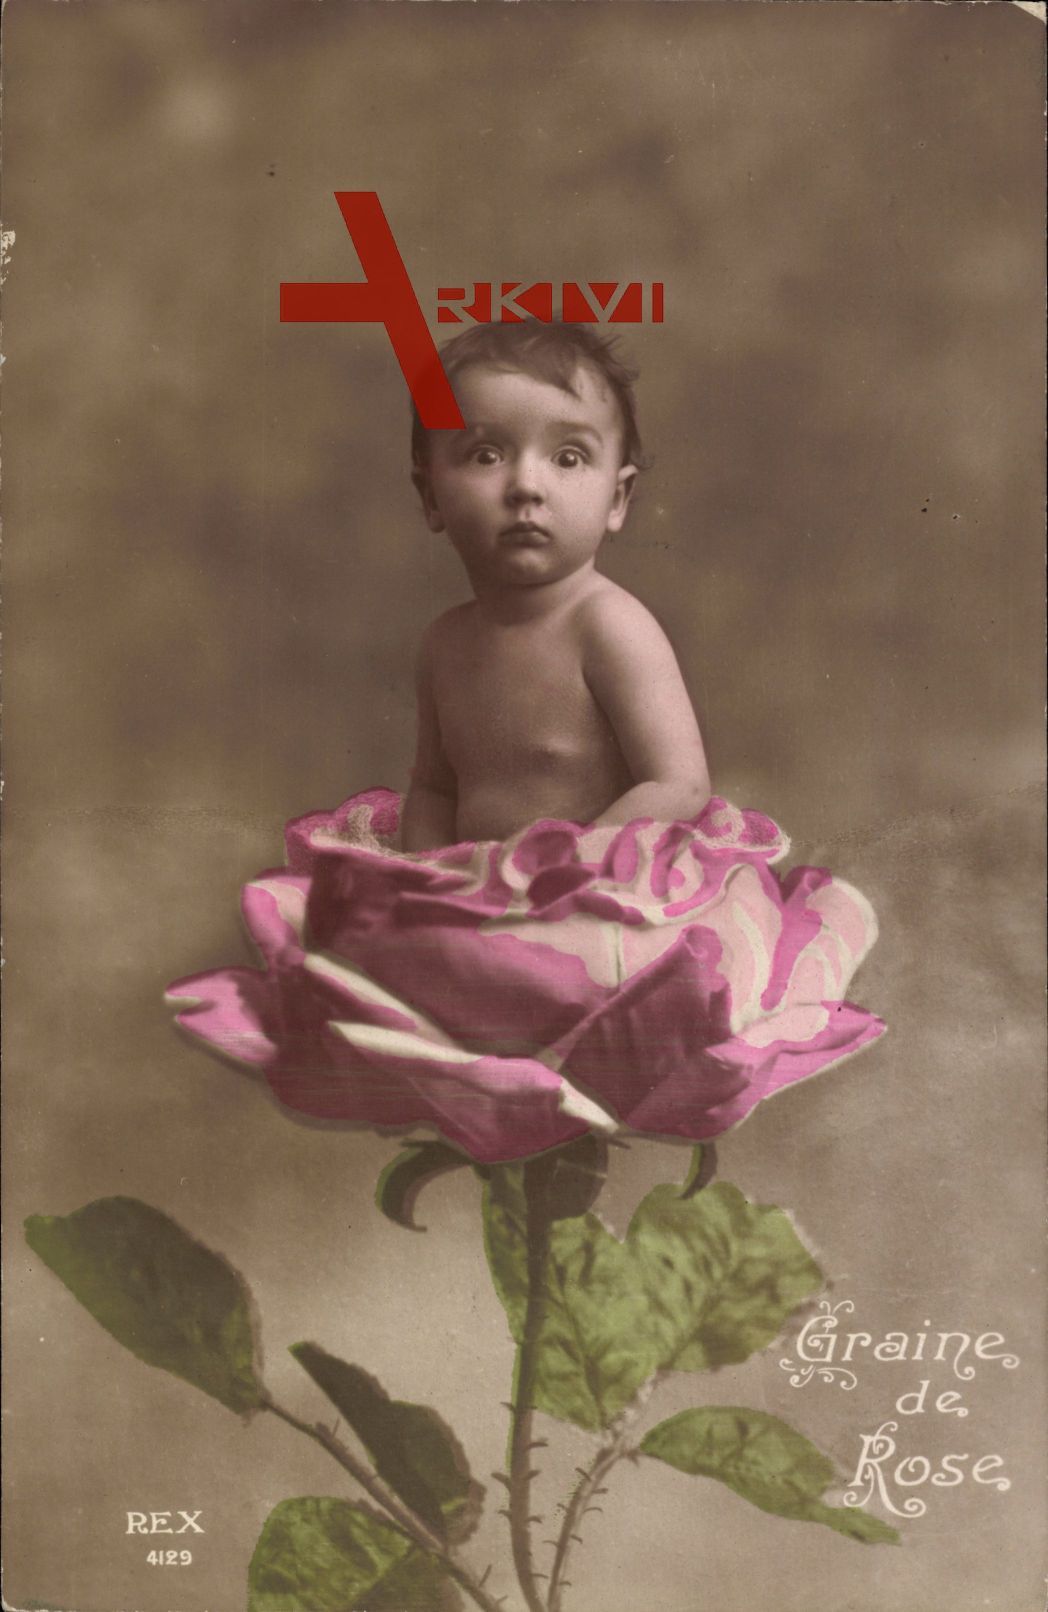 Graine de Rose, Kleinkind in einer Blumenblüte, Rose